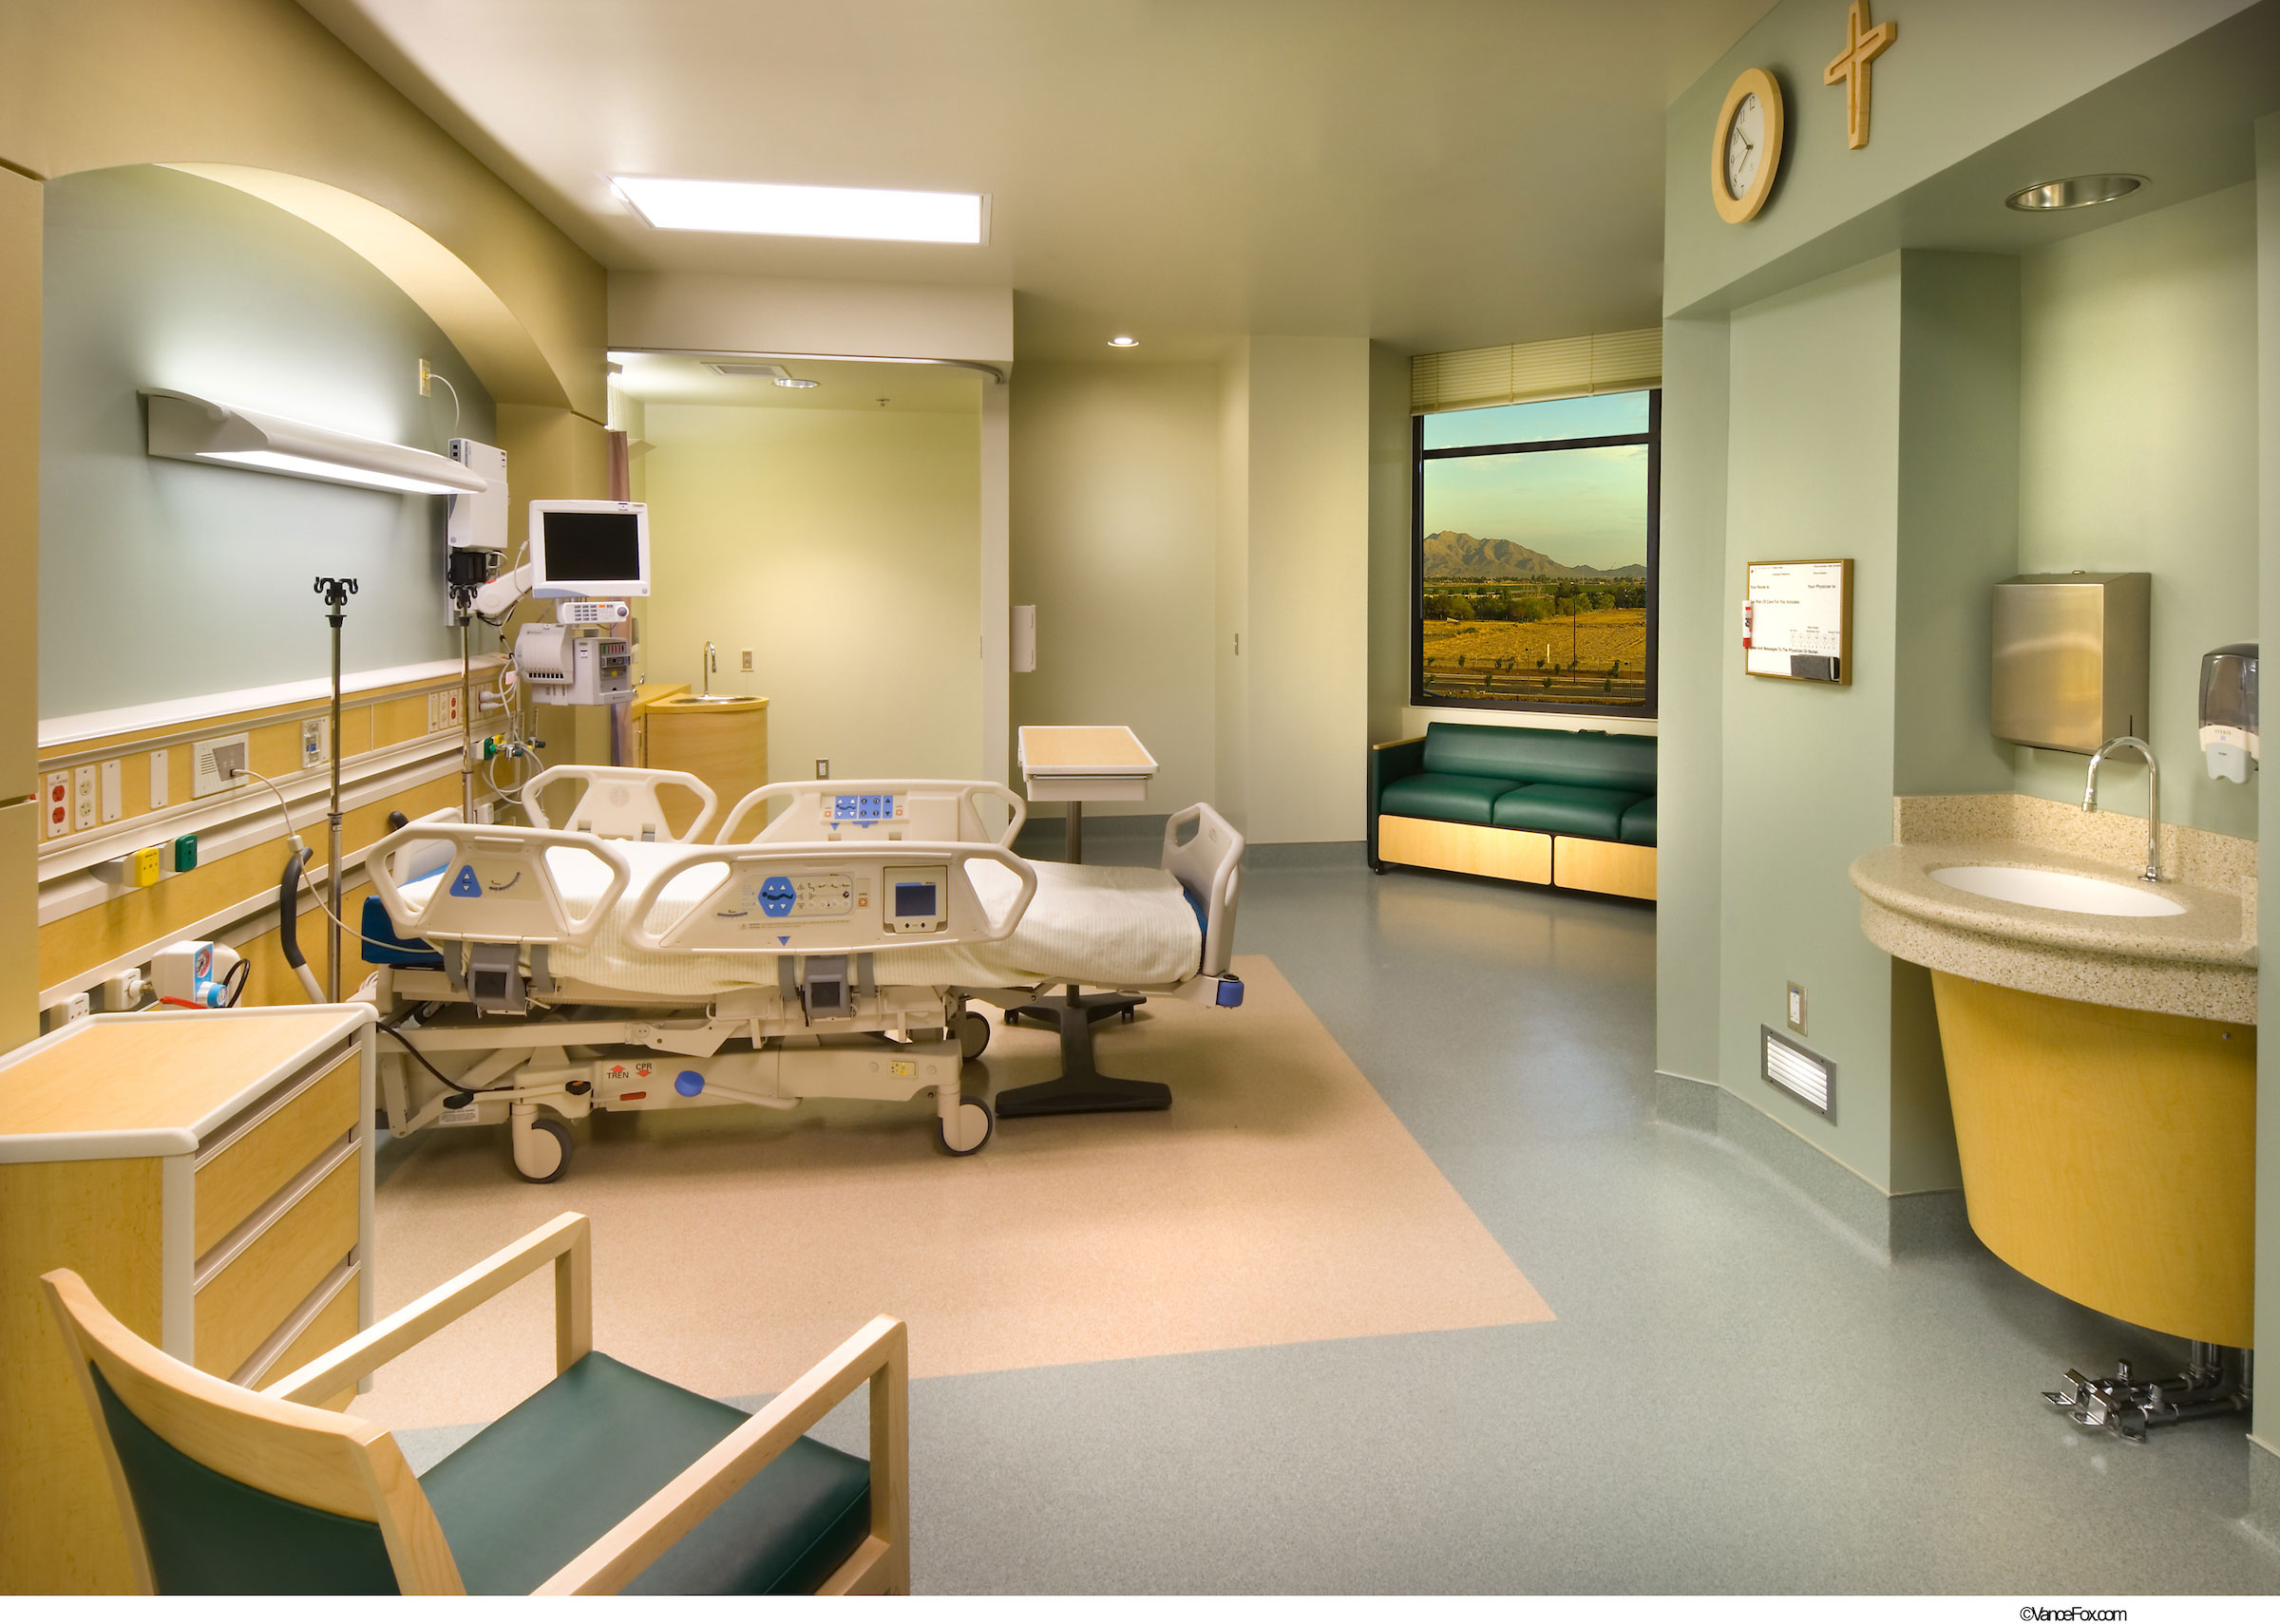 ICU Patient Room